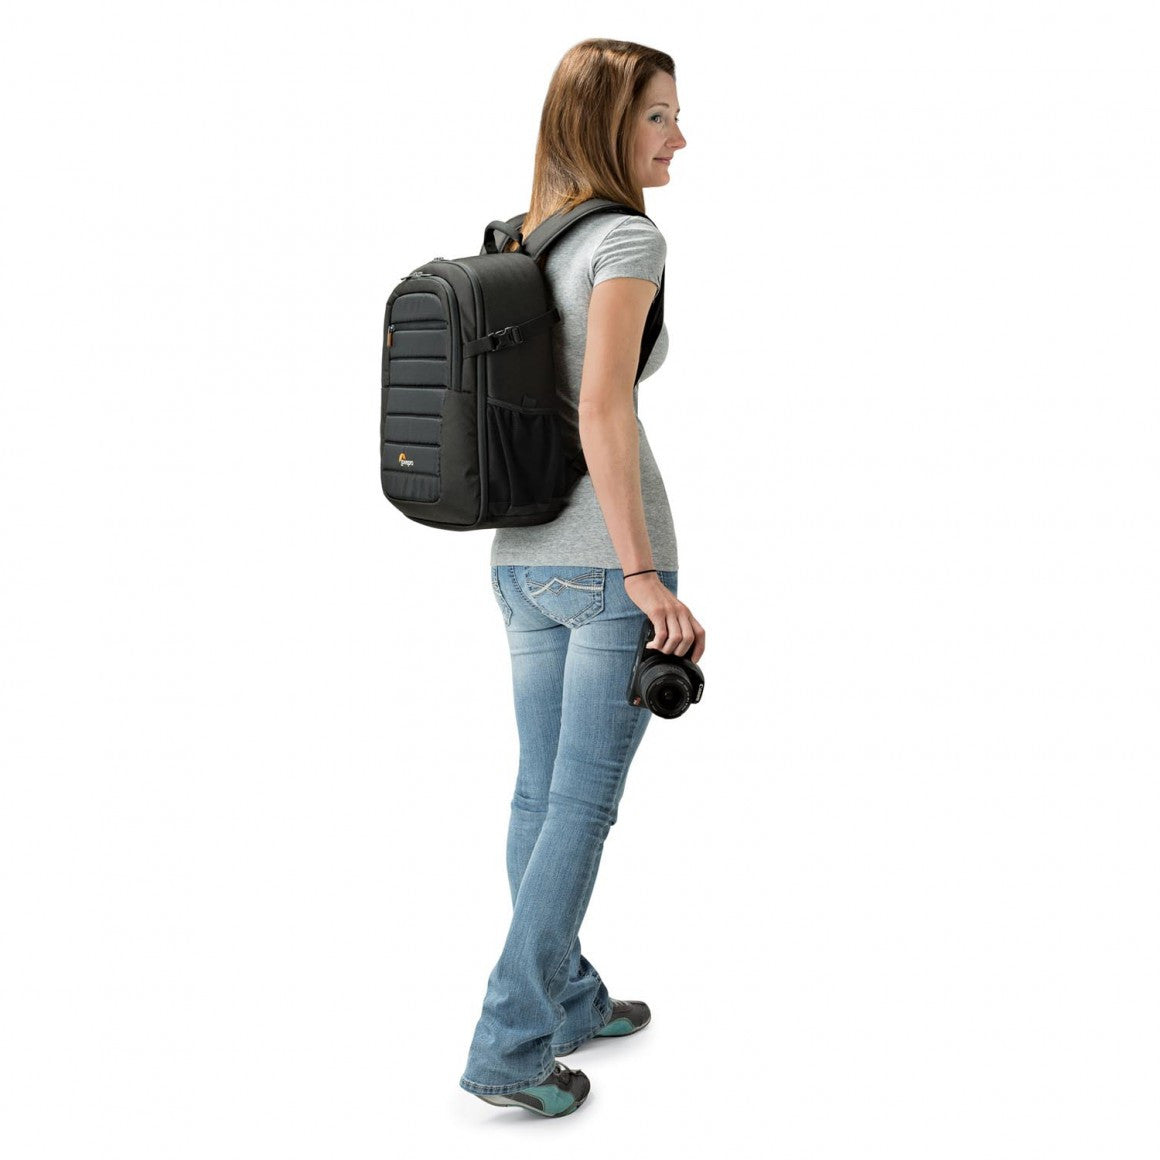 Lowepro Tahoe BP150 Backpack (Black), bags backpacks, Lowepro - Pictureline  - 6